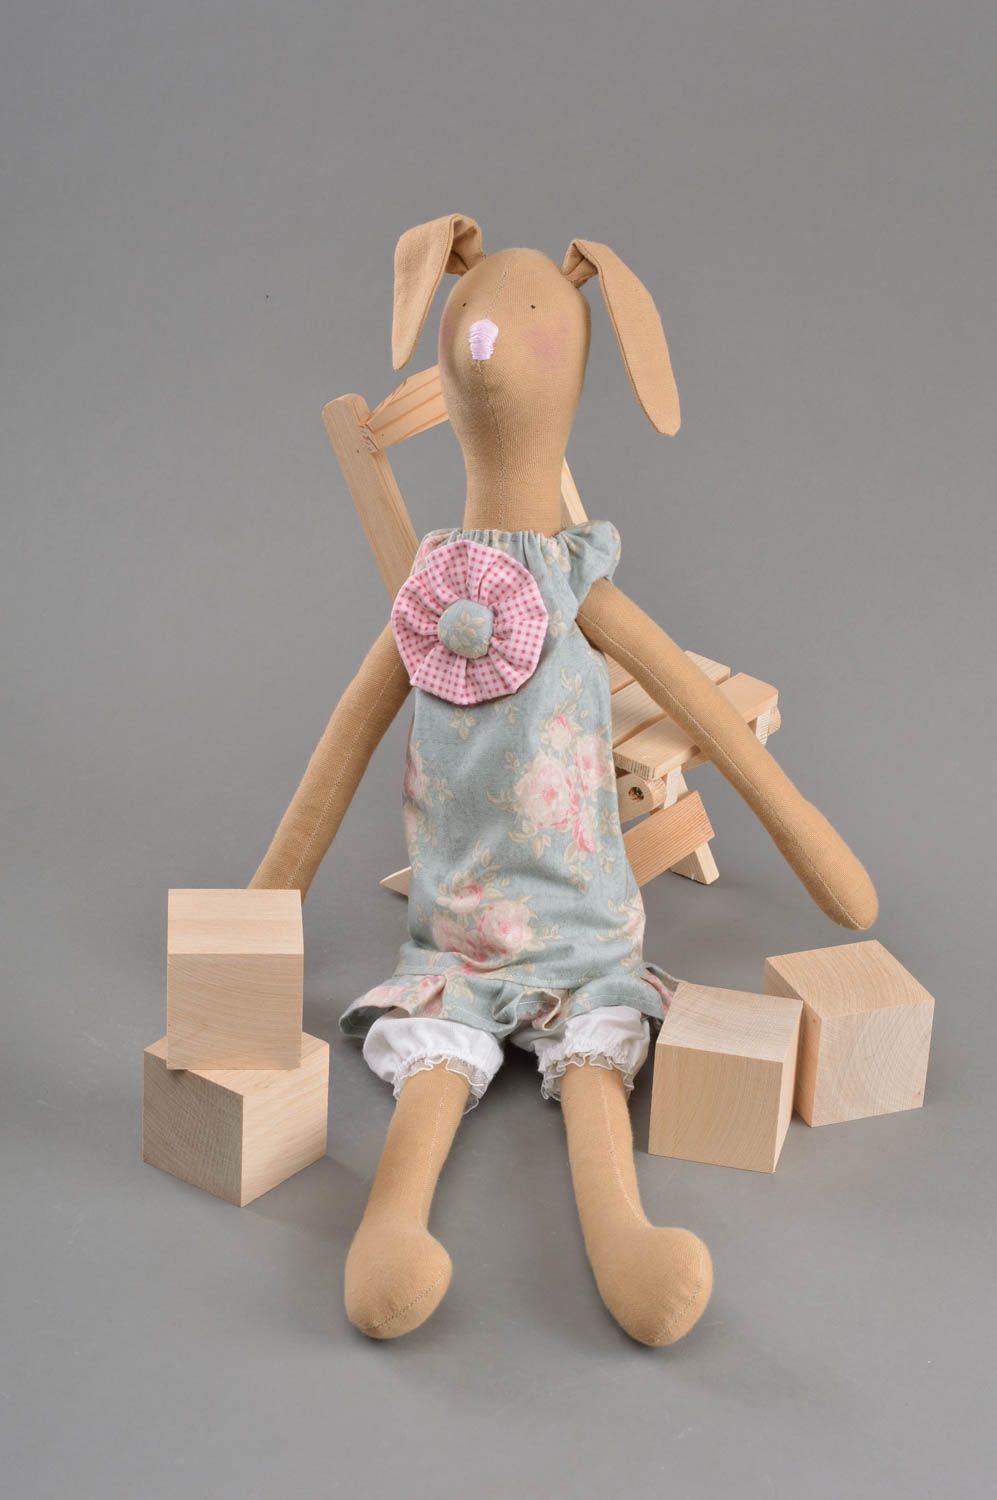 Textil Kuscheltier Hase im Kleid weich schön handmade Spielzeug für Kinder foto 3